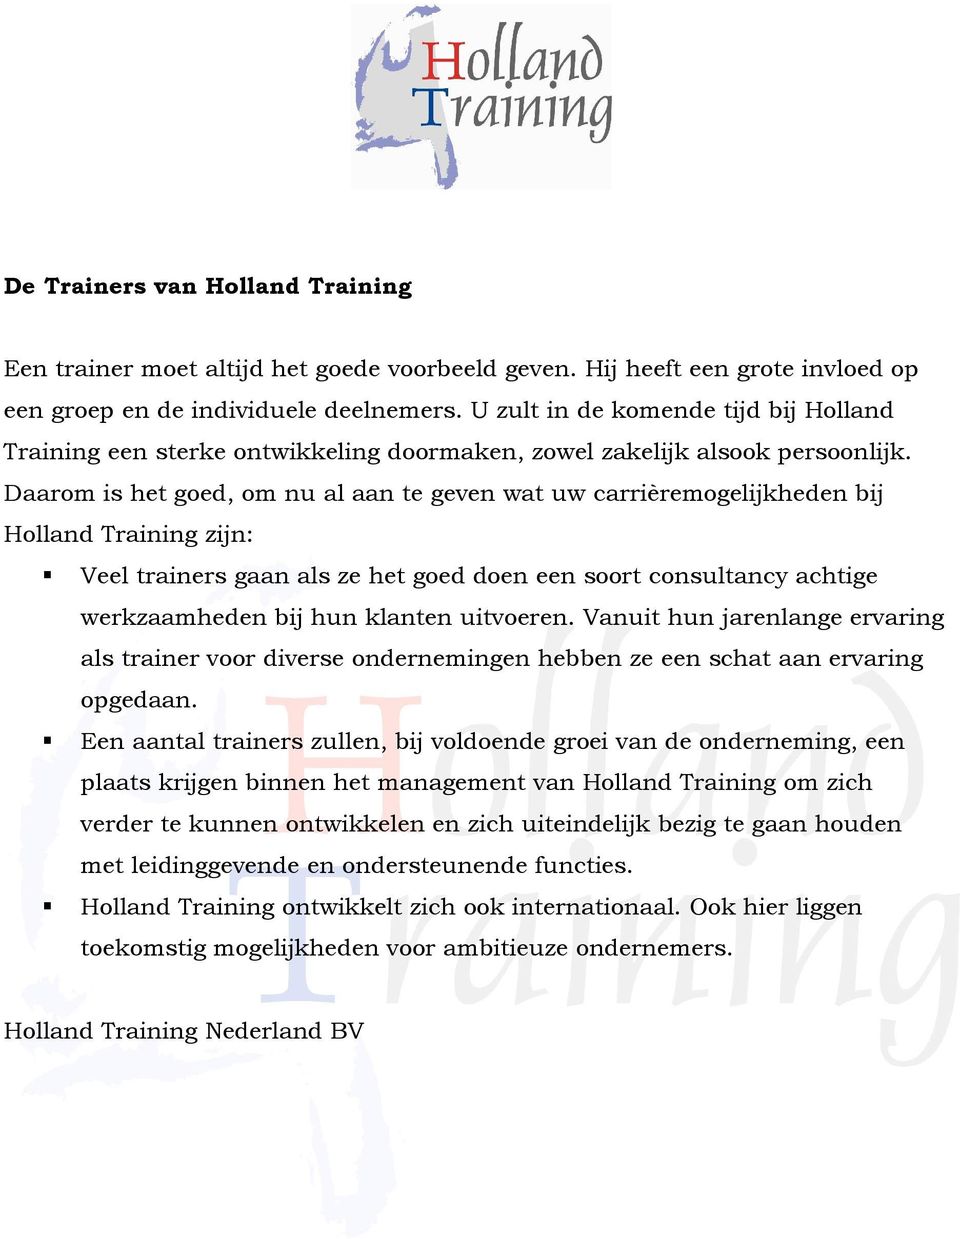 Daarom is het goed, om nu al aan te geven wat uw carrièremogelijkheden bij Holland Training zijn: Veel trainers gaan als ze het goed doen een soort consultancy achtige werkzaamheden bij hun klanten